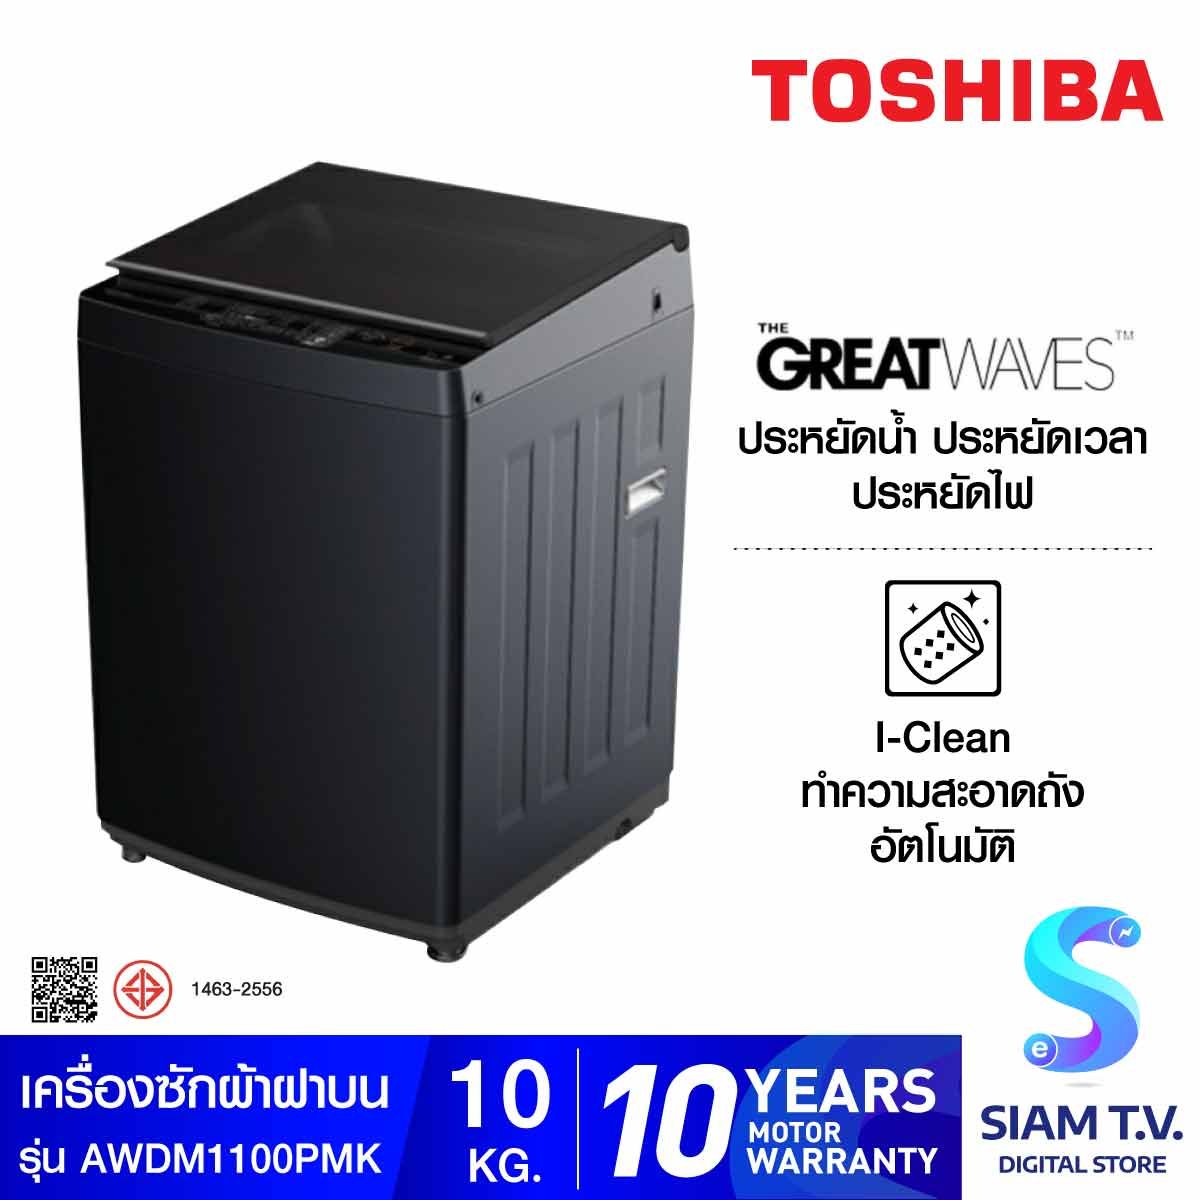 TOSHIBA เครื่องซักผ้าฝาบน10Kg. Inverter สีดำ รุ่นAW-DM1100PTMK